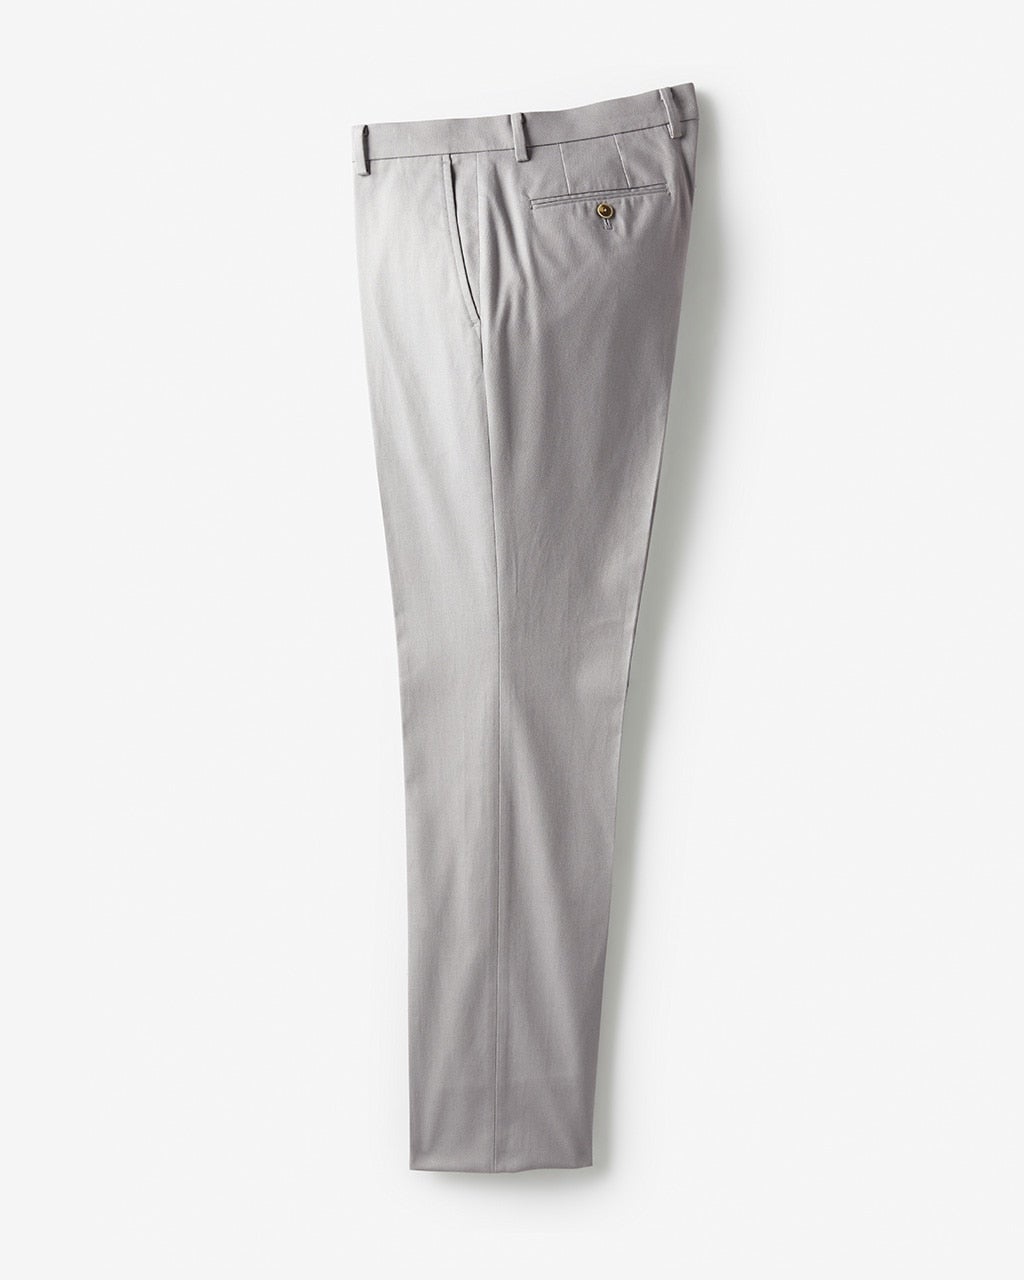 F245/DURBAN パンツ ノータック 裾シングル ストレッチ 82 グレー